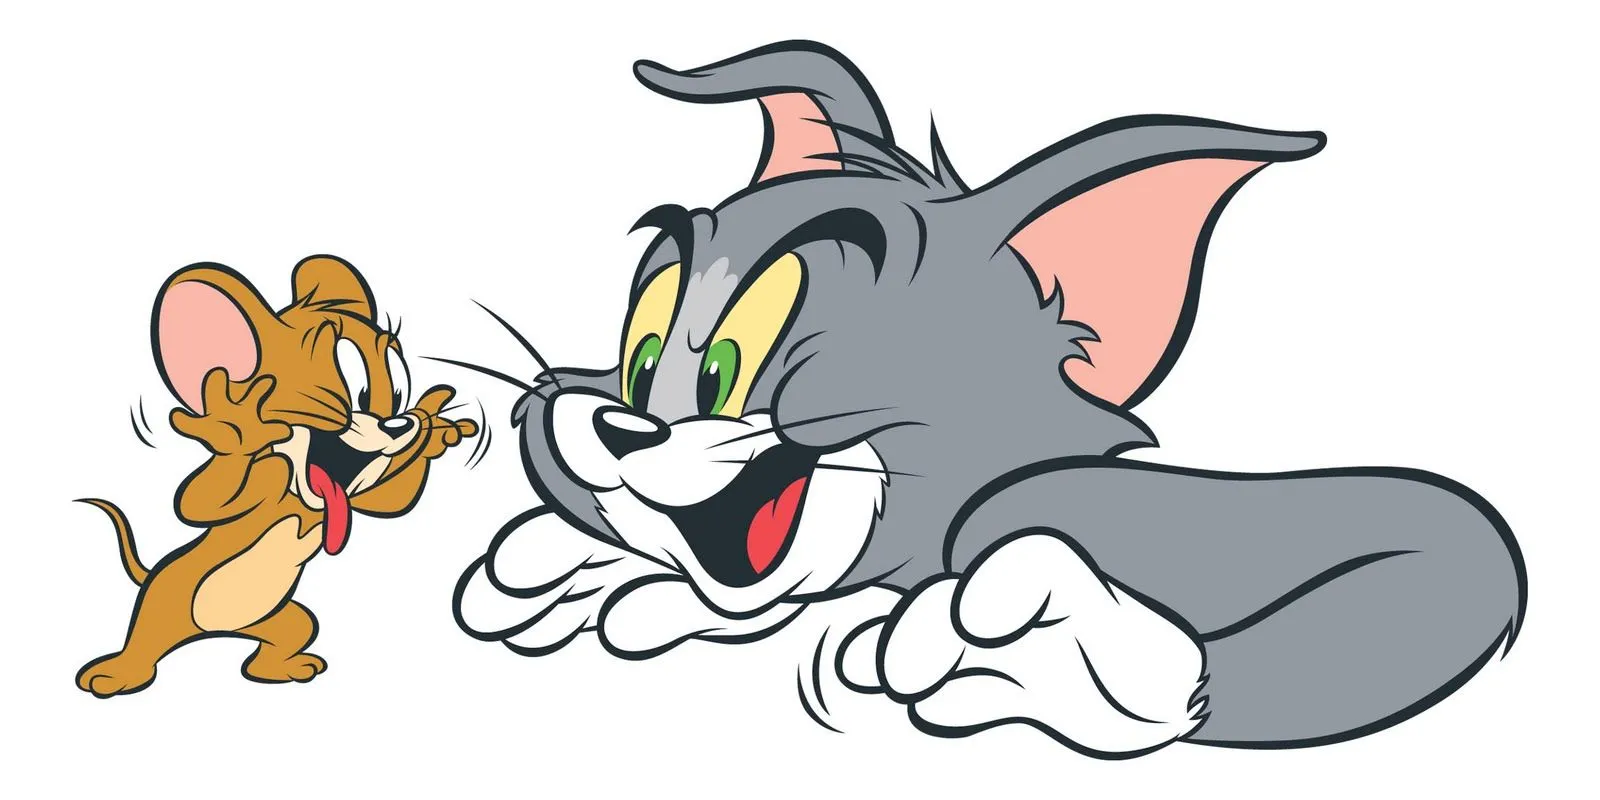 Imagenes de Tom y Jerry para Imprimir Blog De Fotografias ...